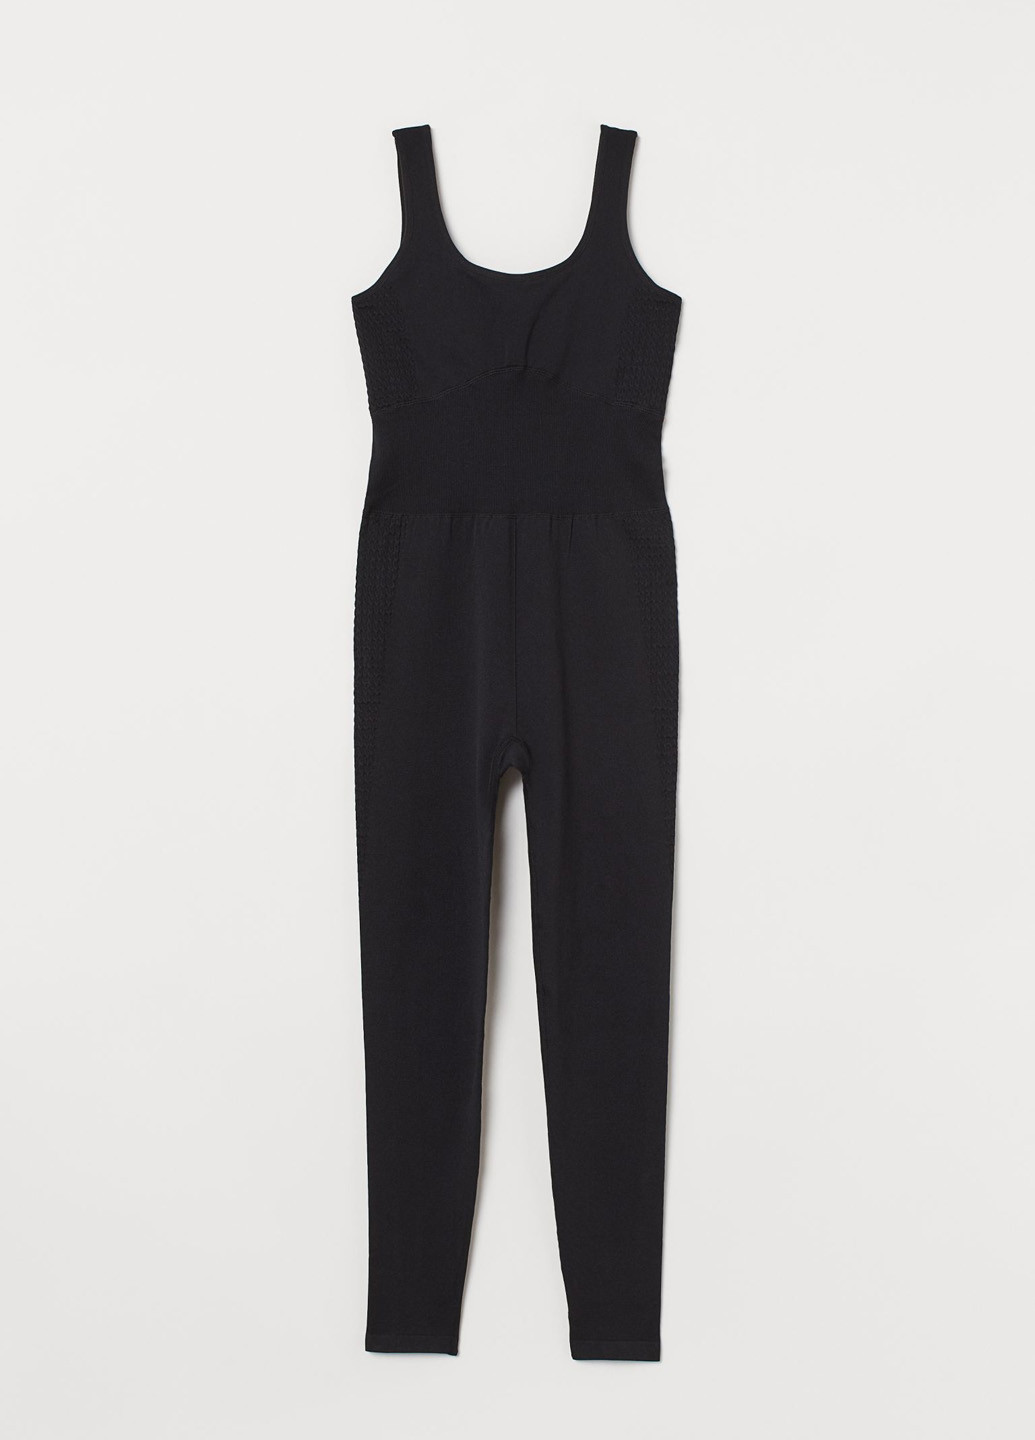 Комбинезон H&M комбинезон-брюки однотонный чёрный спортивный полиамид, трикотаж